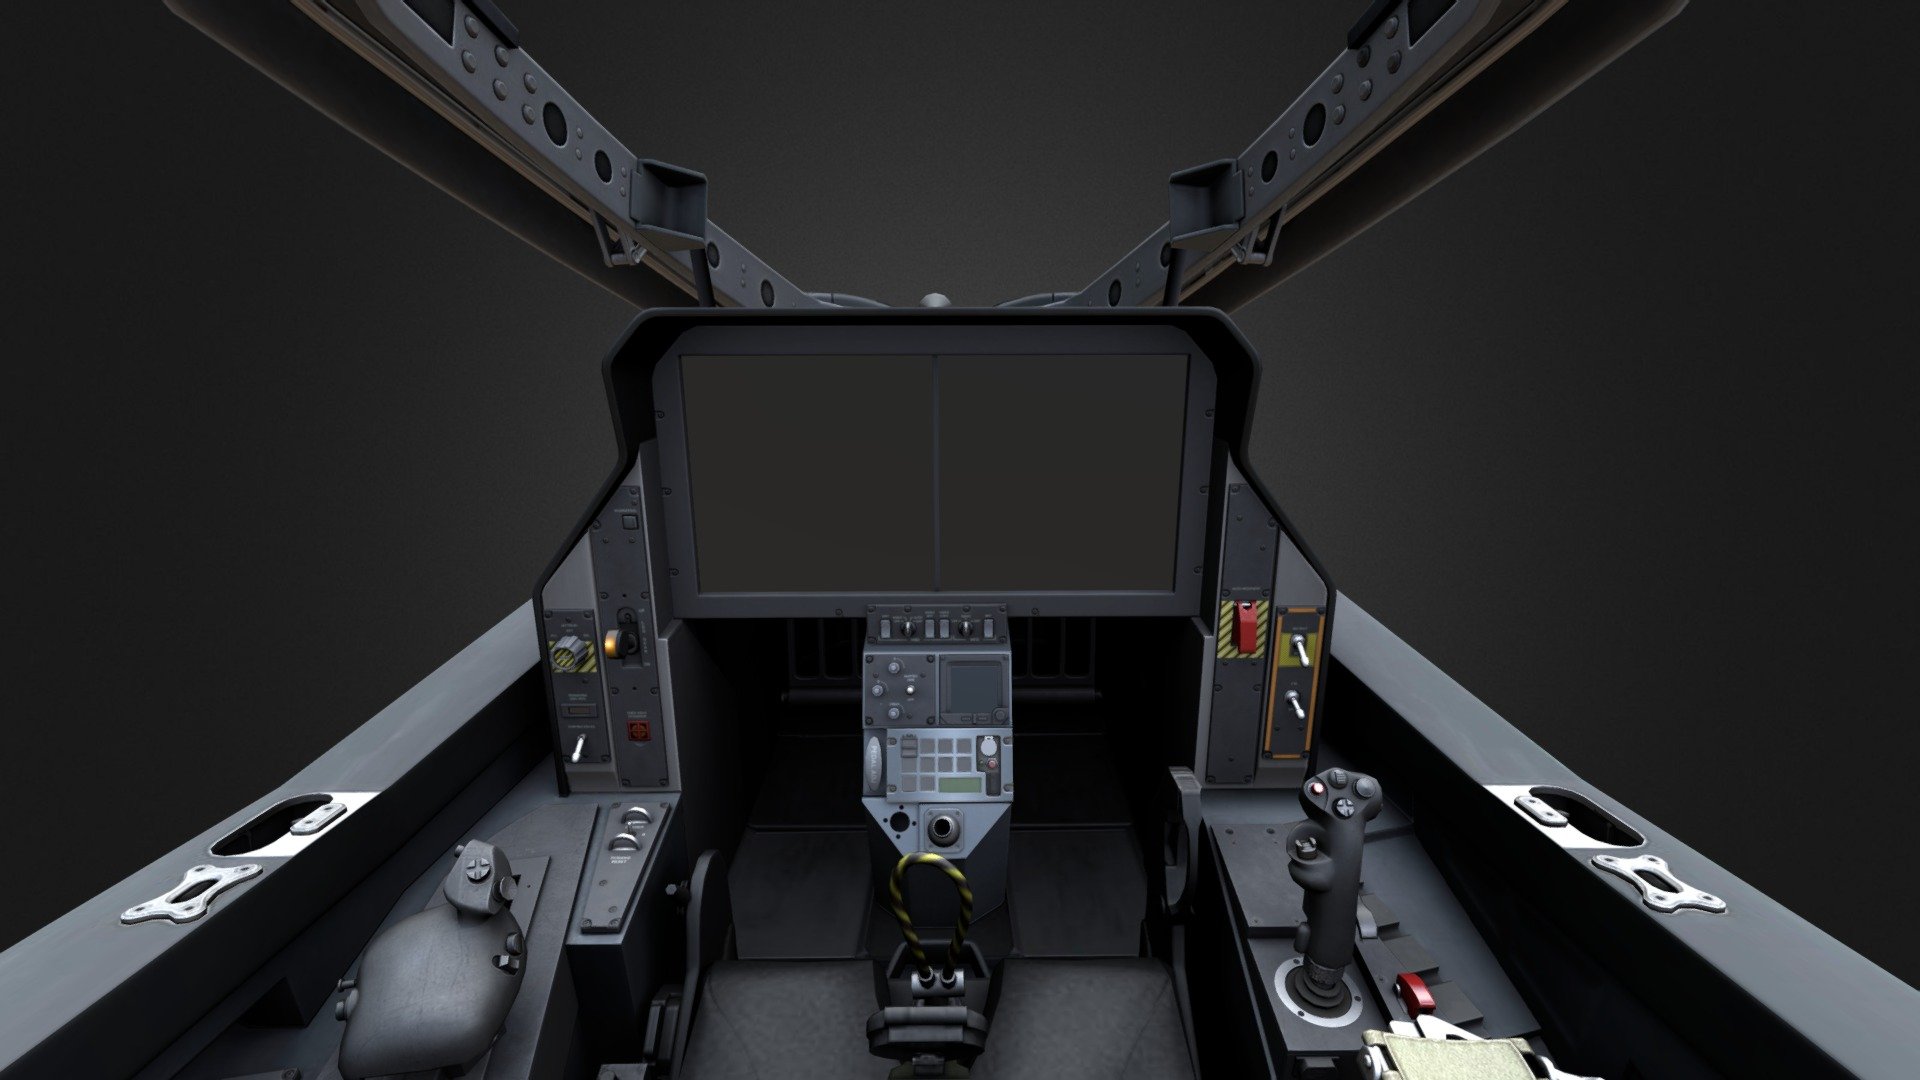 gundam cockpit background zoom